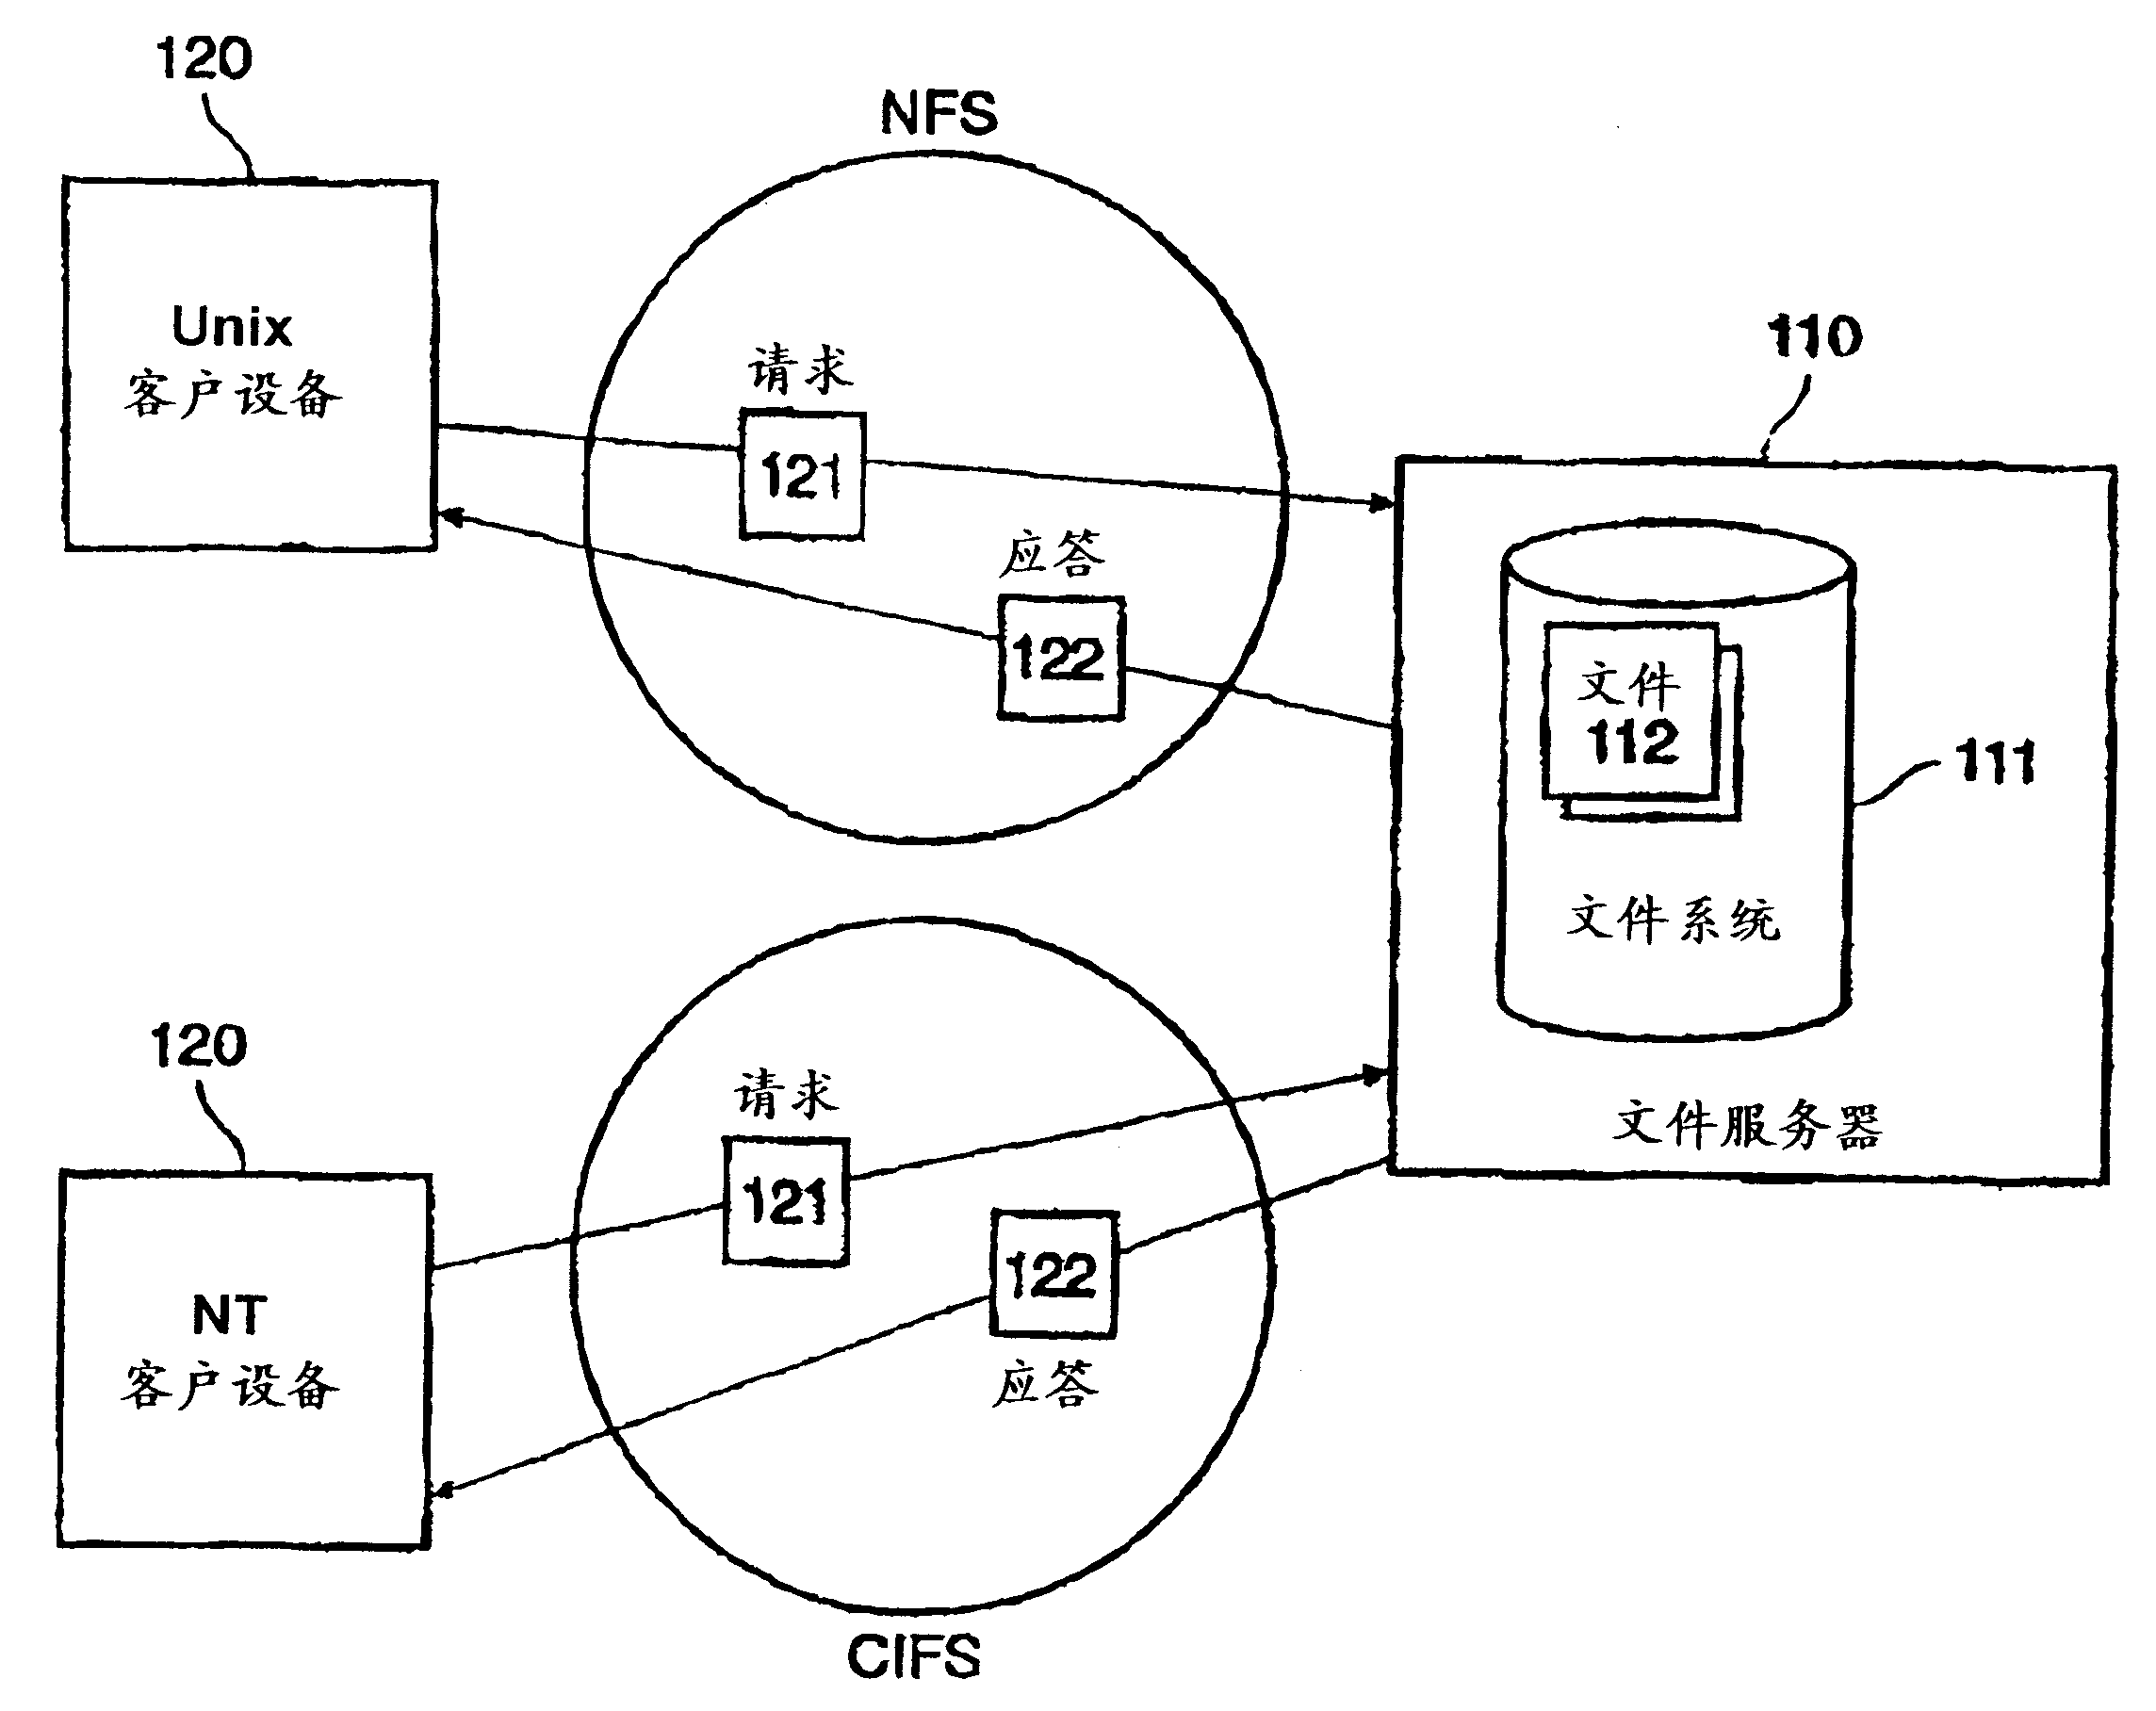 File access control in a multi-protocol file server